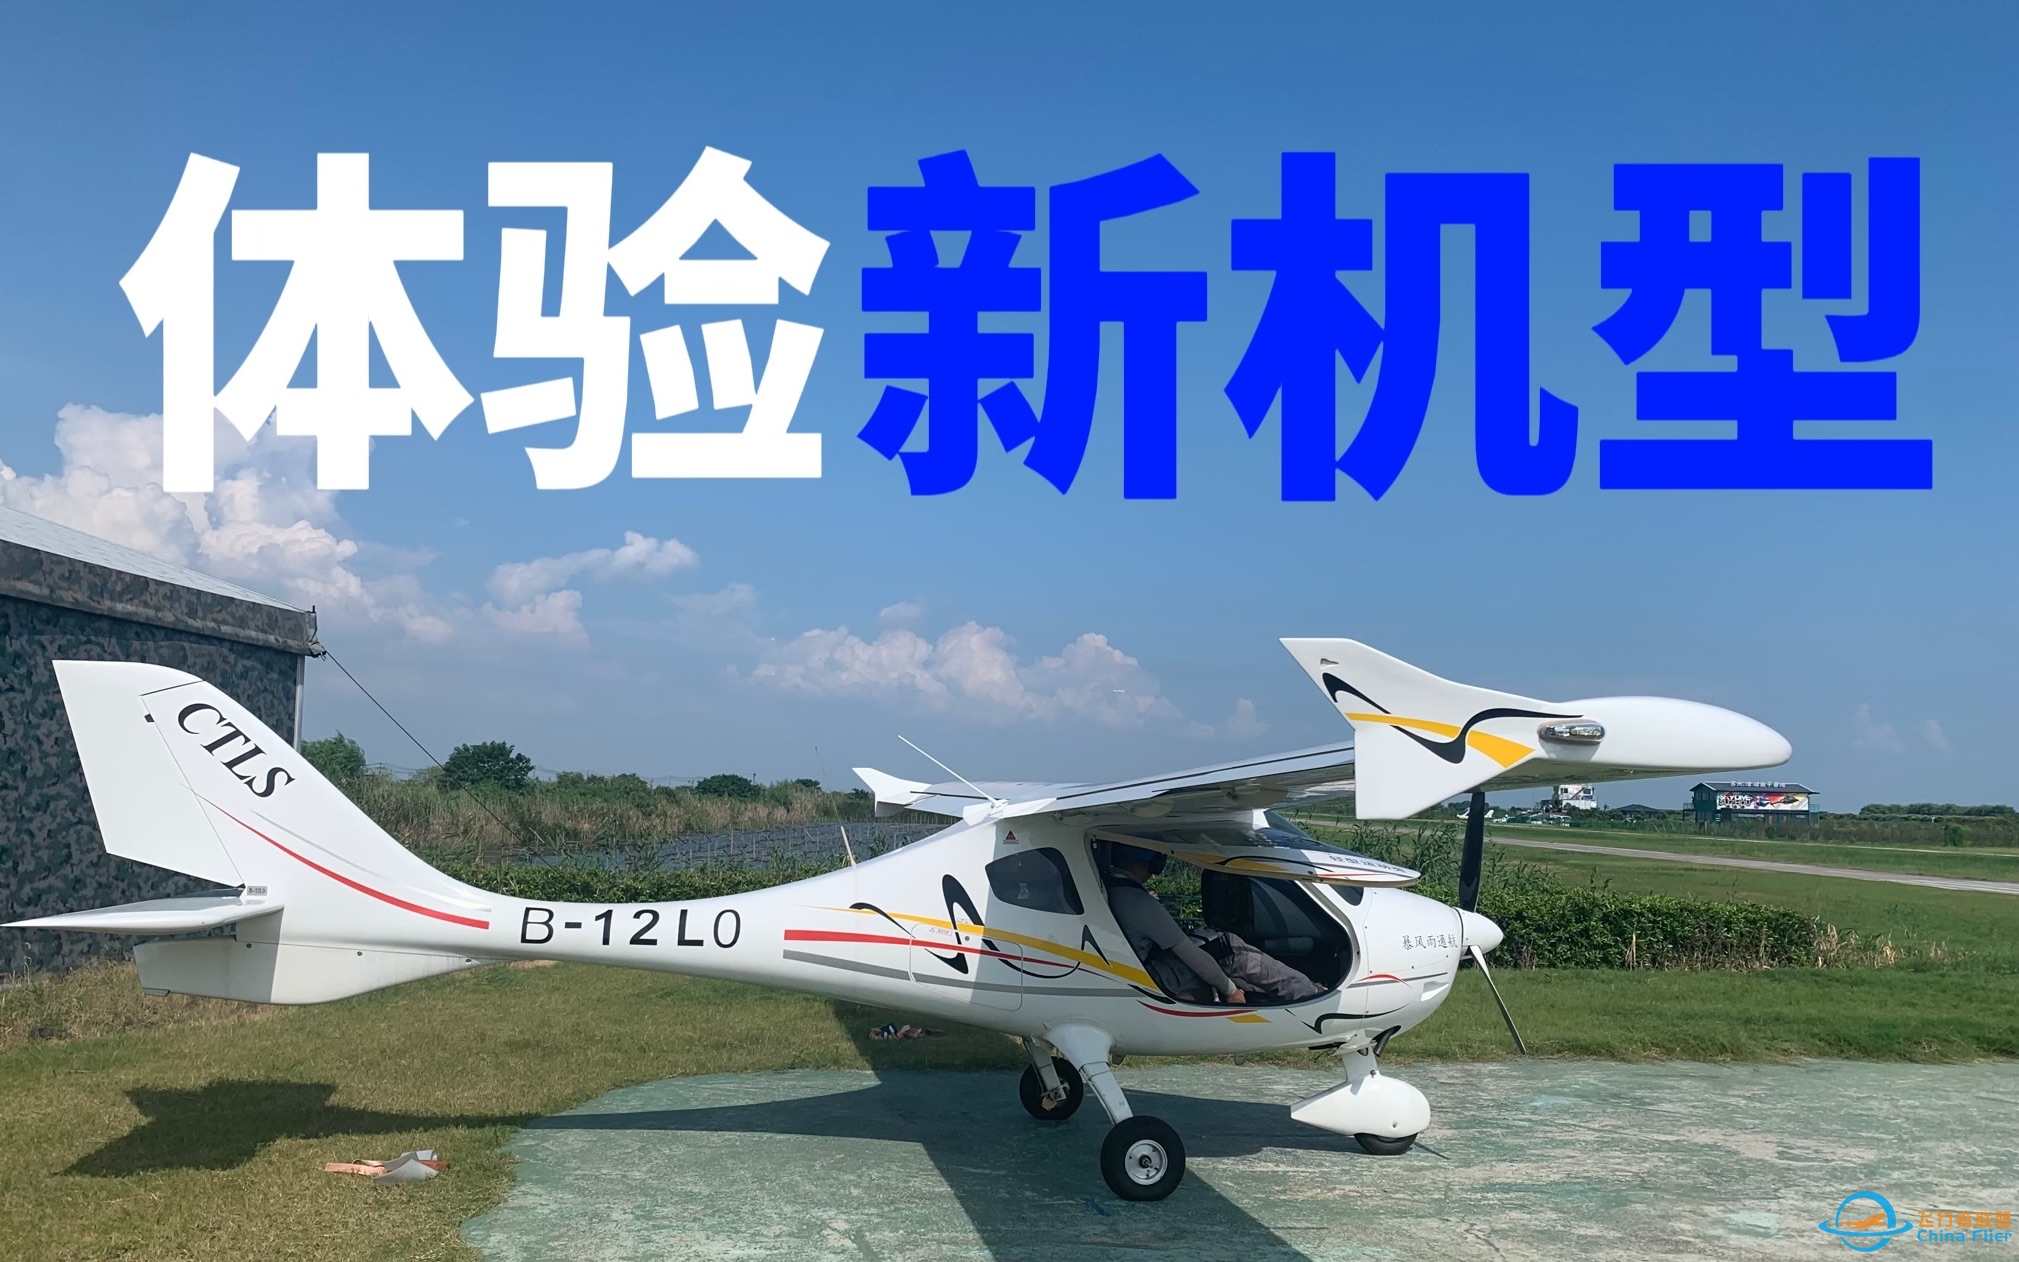 【体验飞行】初中生飞友首次体验驾驶CTLS飞机｜新的机型新的挑战-8179 